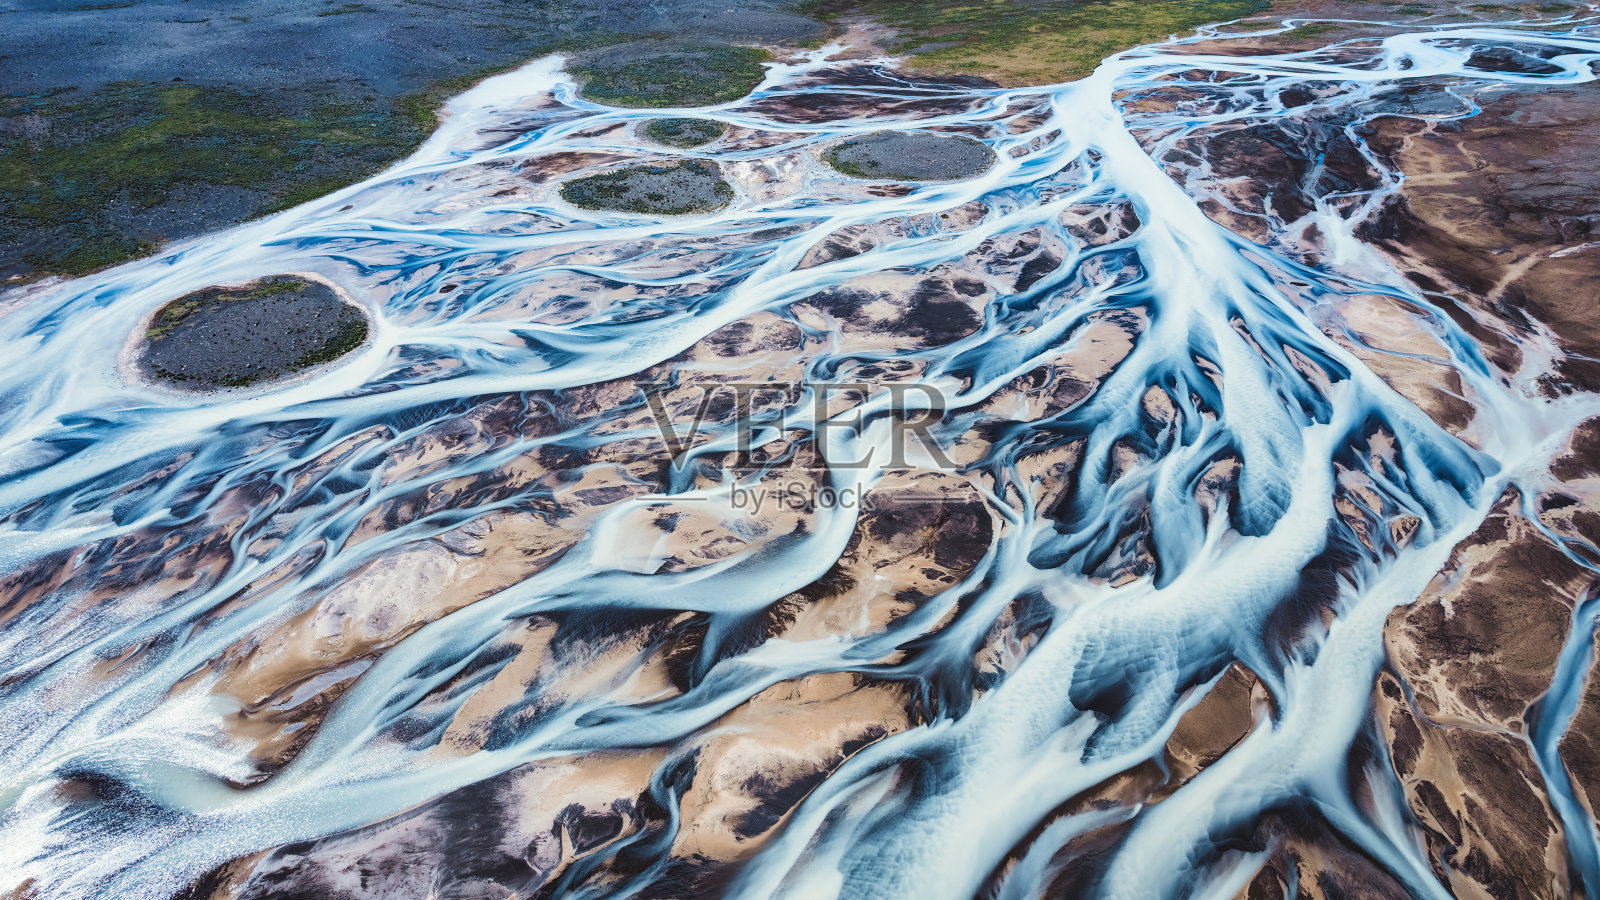 摘要冰岛高原上的冰川河流格局照片摄影图片